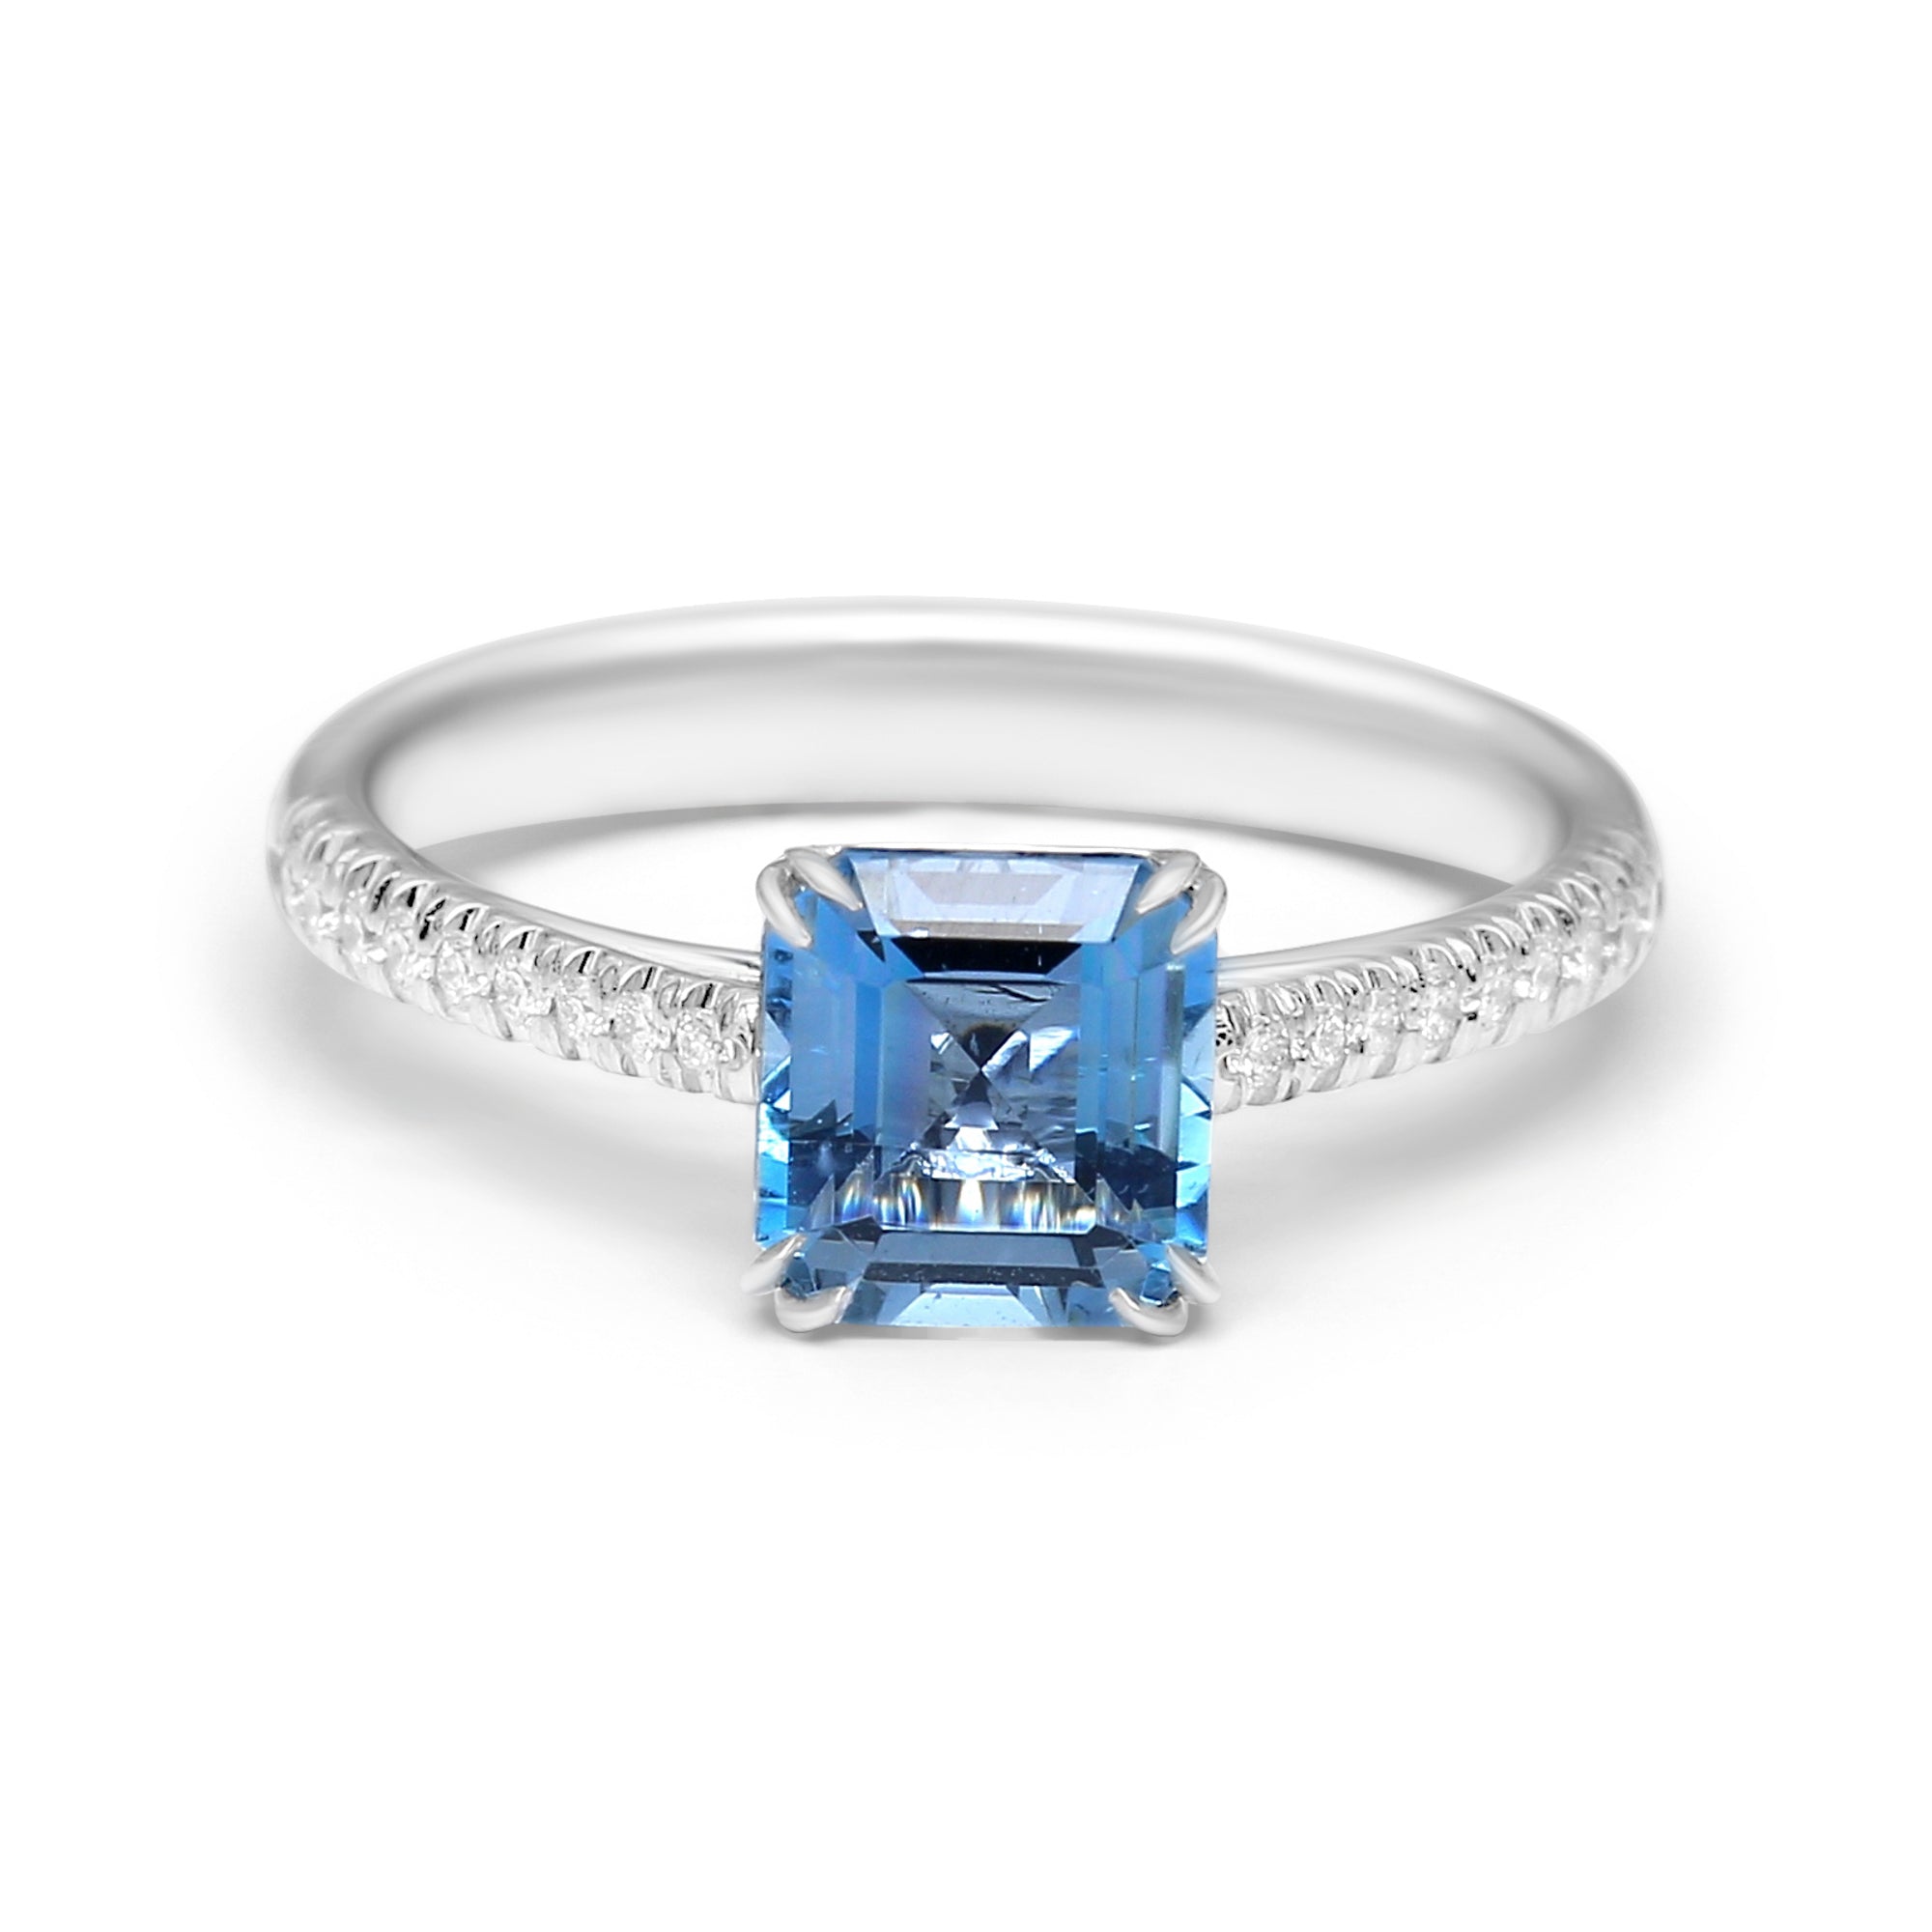 Square Aquamarine with Diamonds - 1.53ct TW